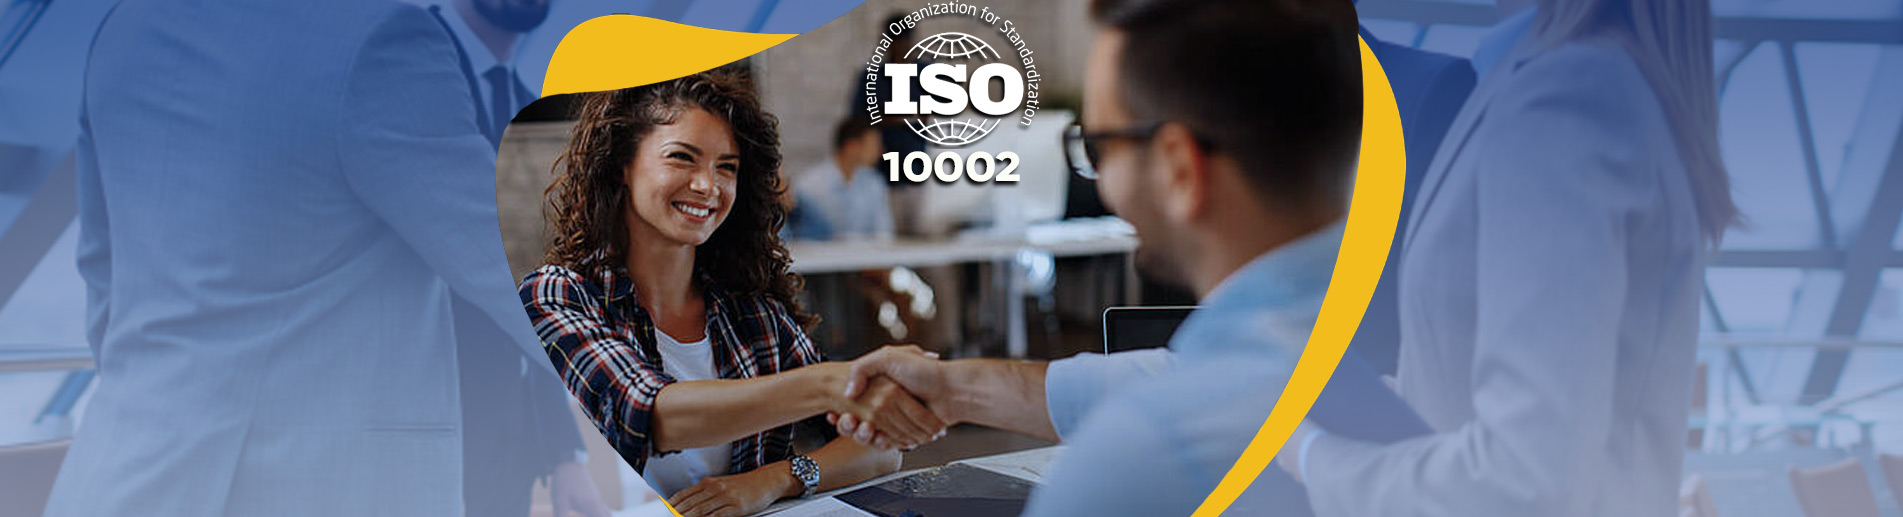 ISO 10002 Fiyatı Maliyeti Nedir ?